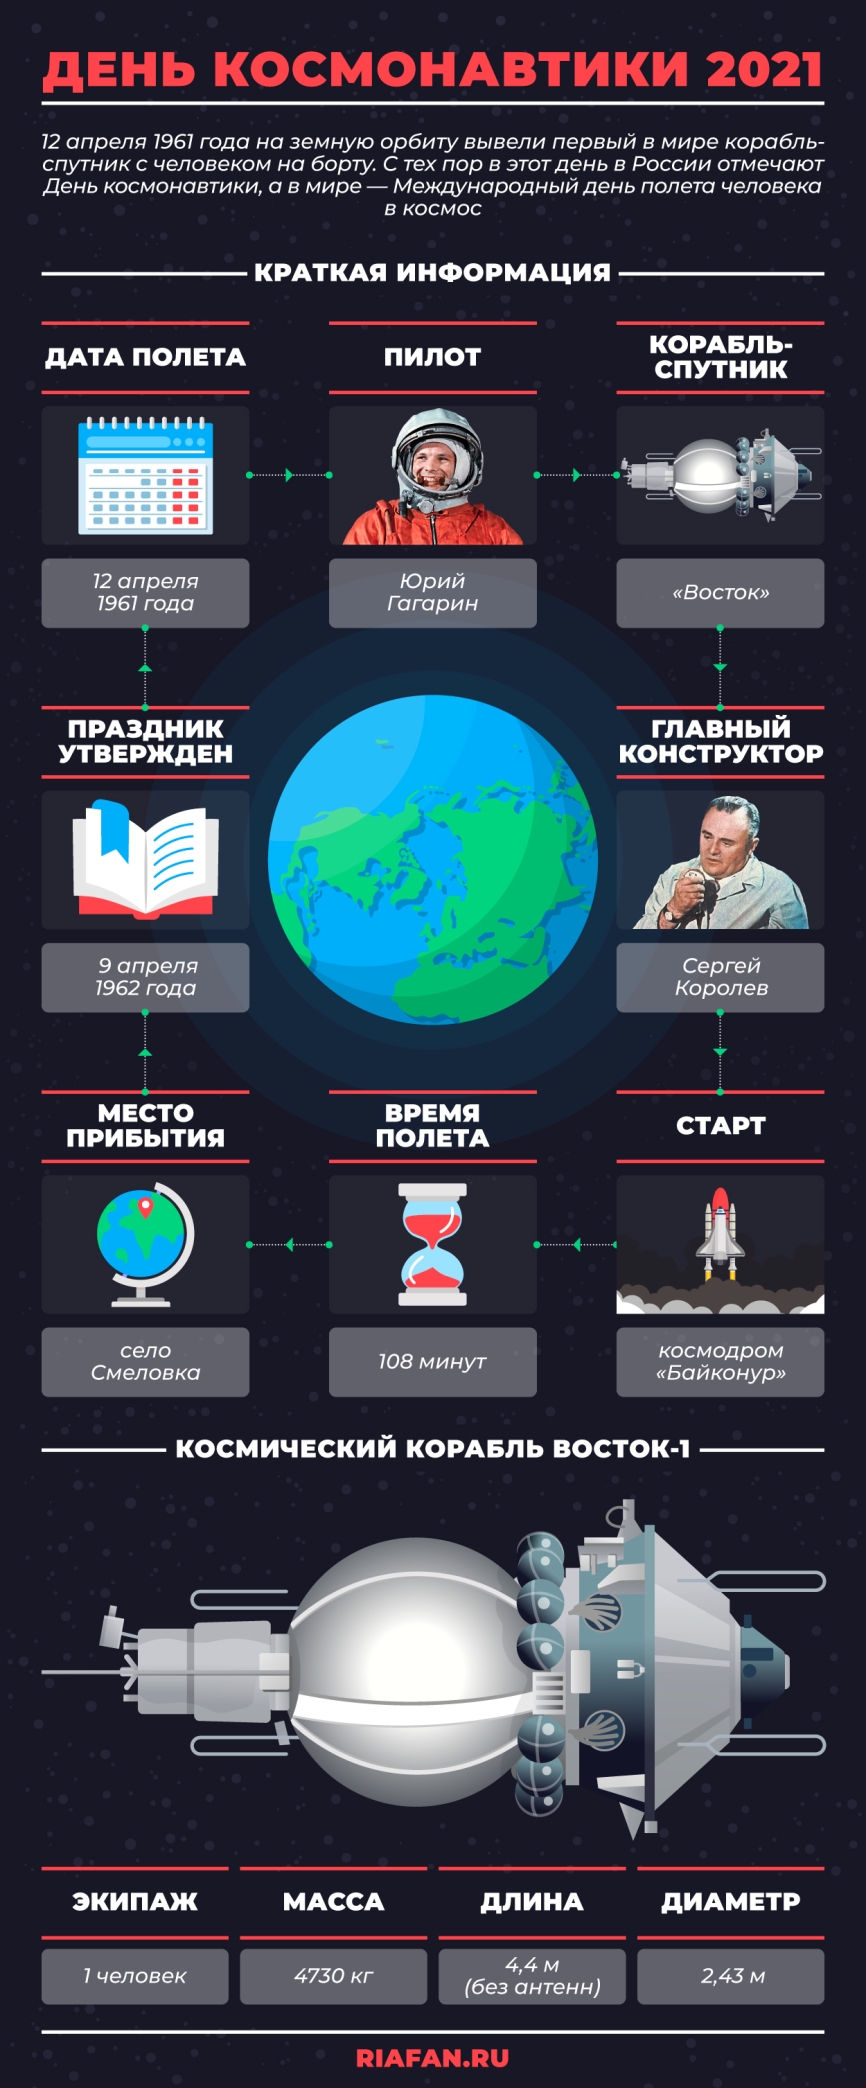 Как Юрий Гагарин отправился в первый космический полет: малоизвестные факты